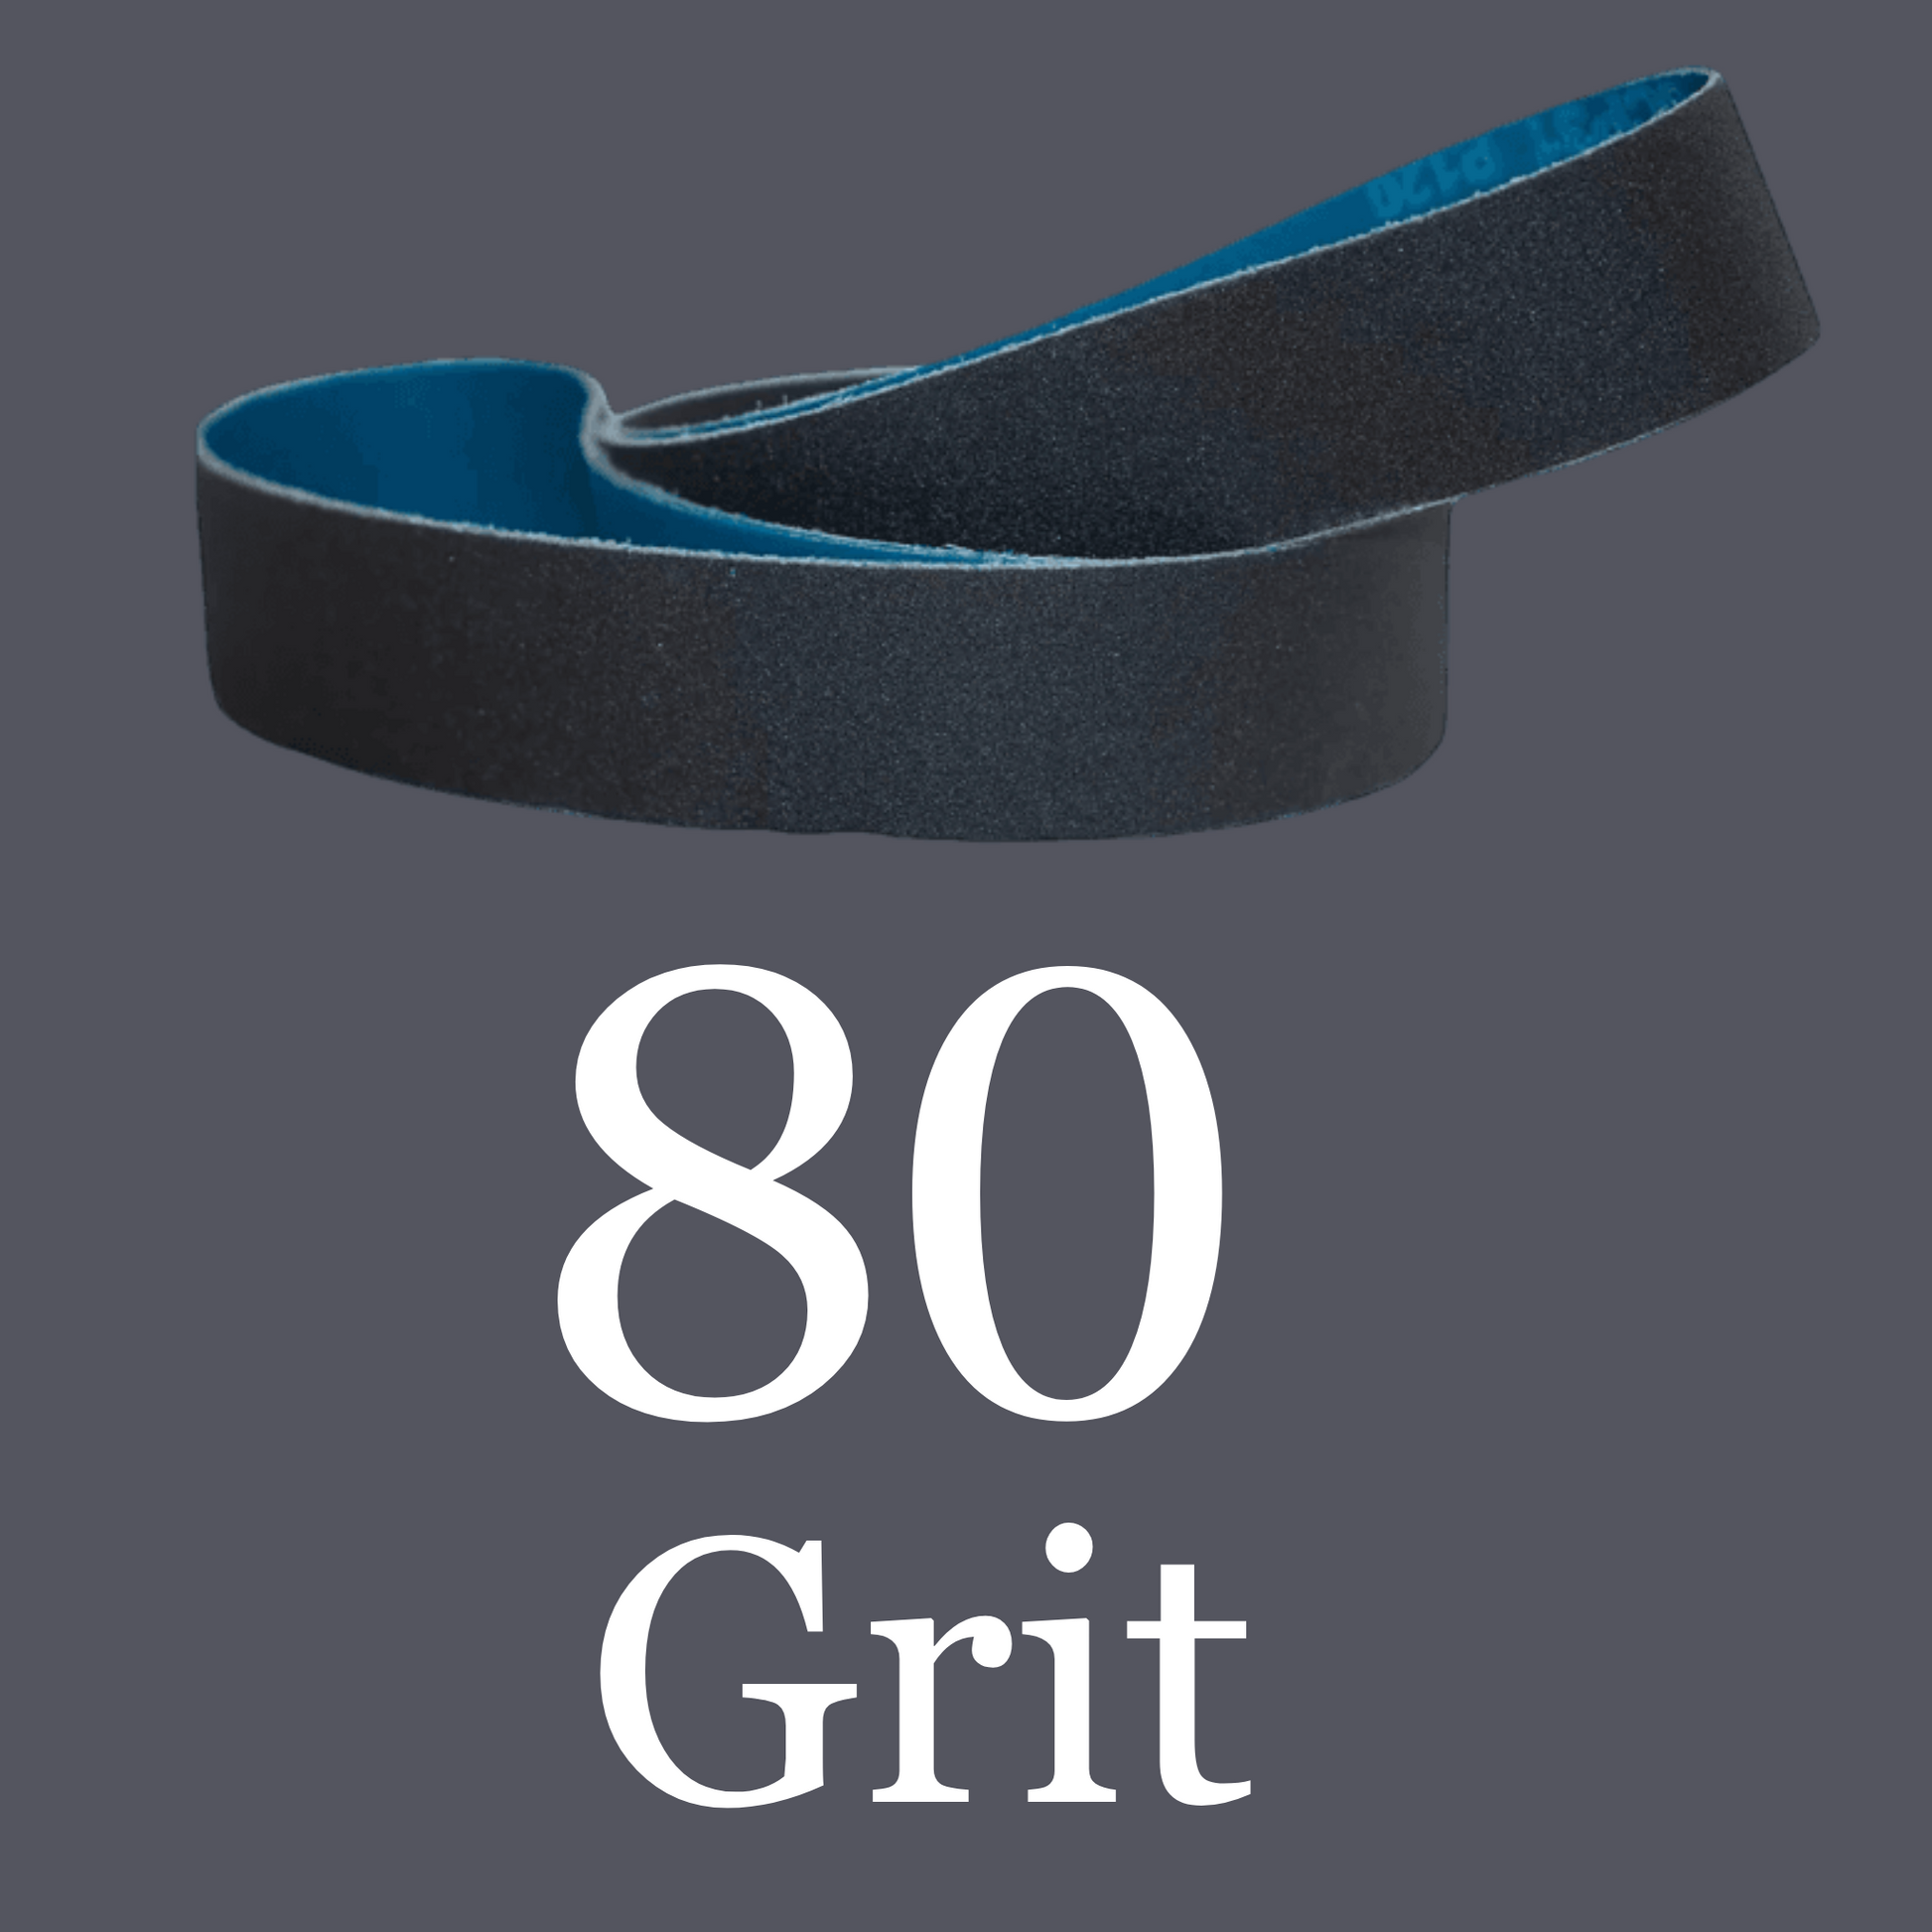 2” x 72” Premium Black Silicon Carbide “Y” Belts 80 Grit